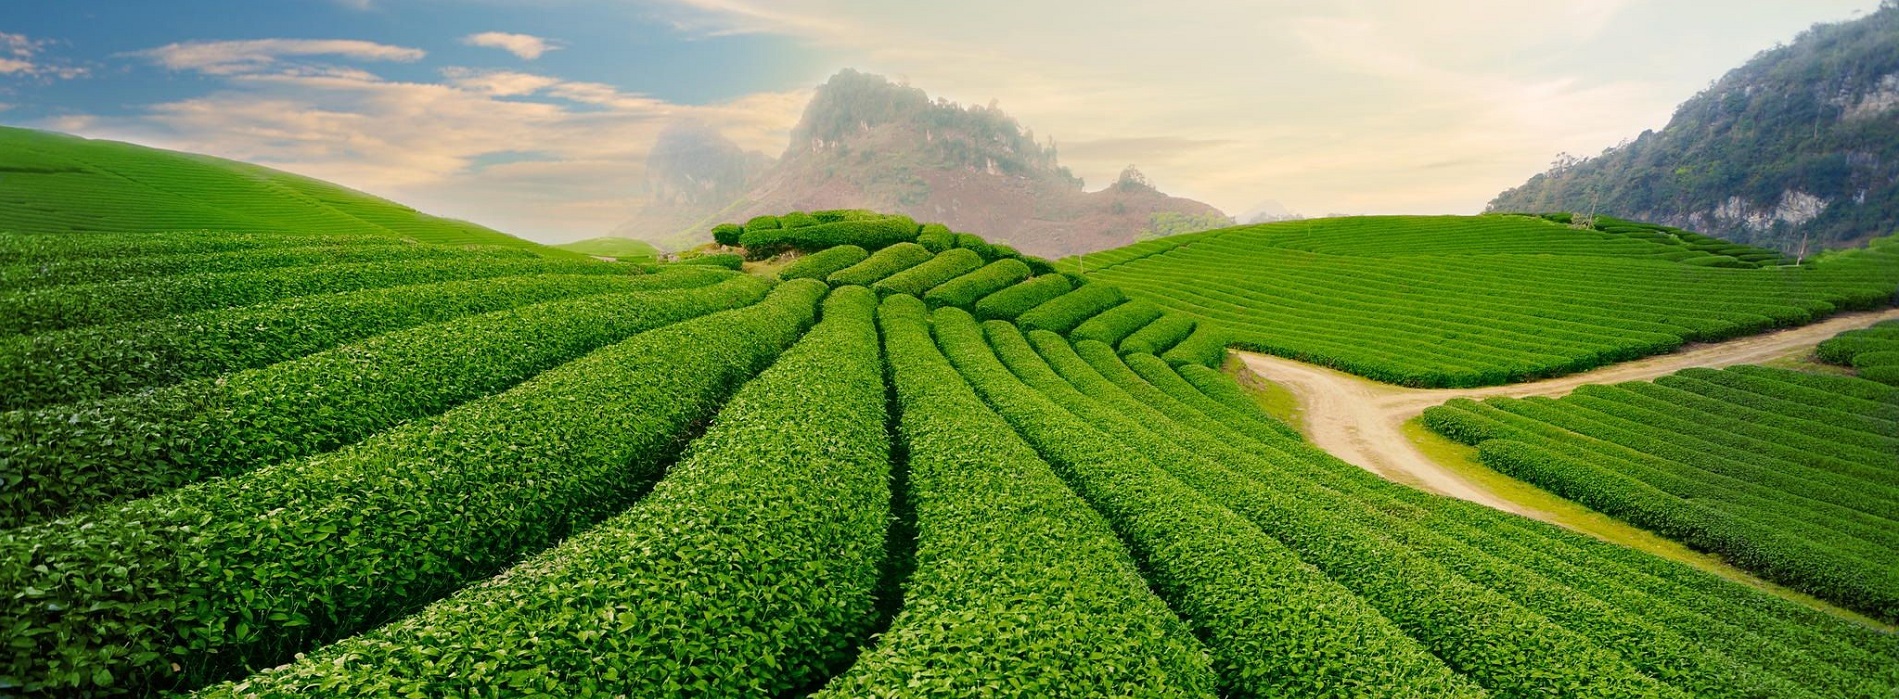 Những hàng chè thẳng tắp, ngập tràn sắc xanh tại thủ phủ trà Tân Cương, Thái Nguyên (Ảnh: sưu tầm)